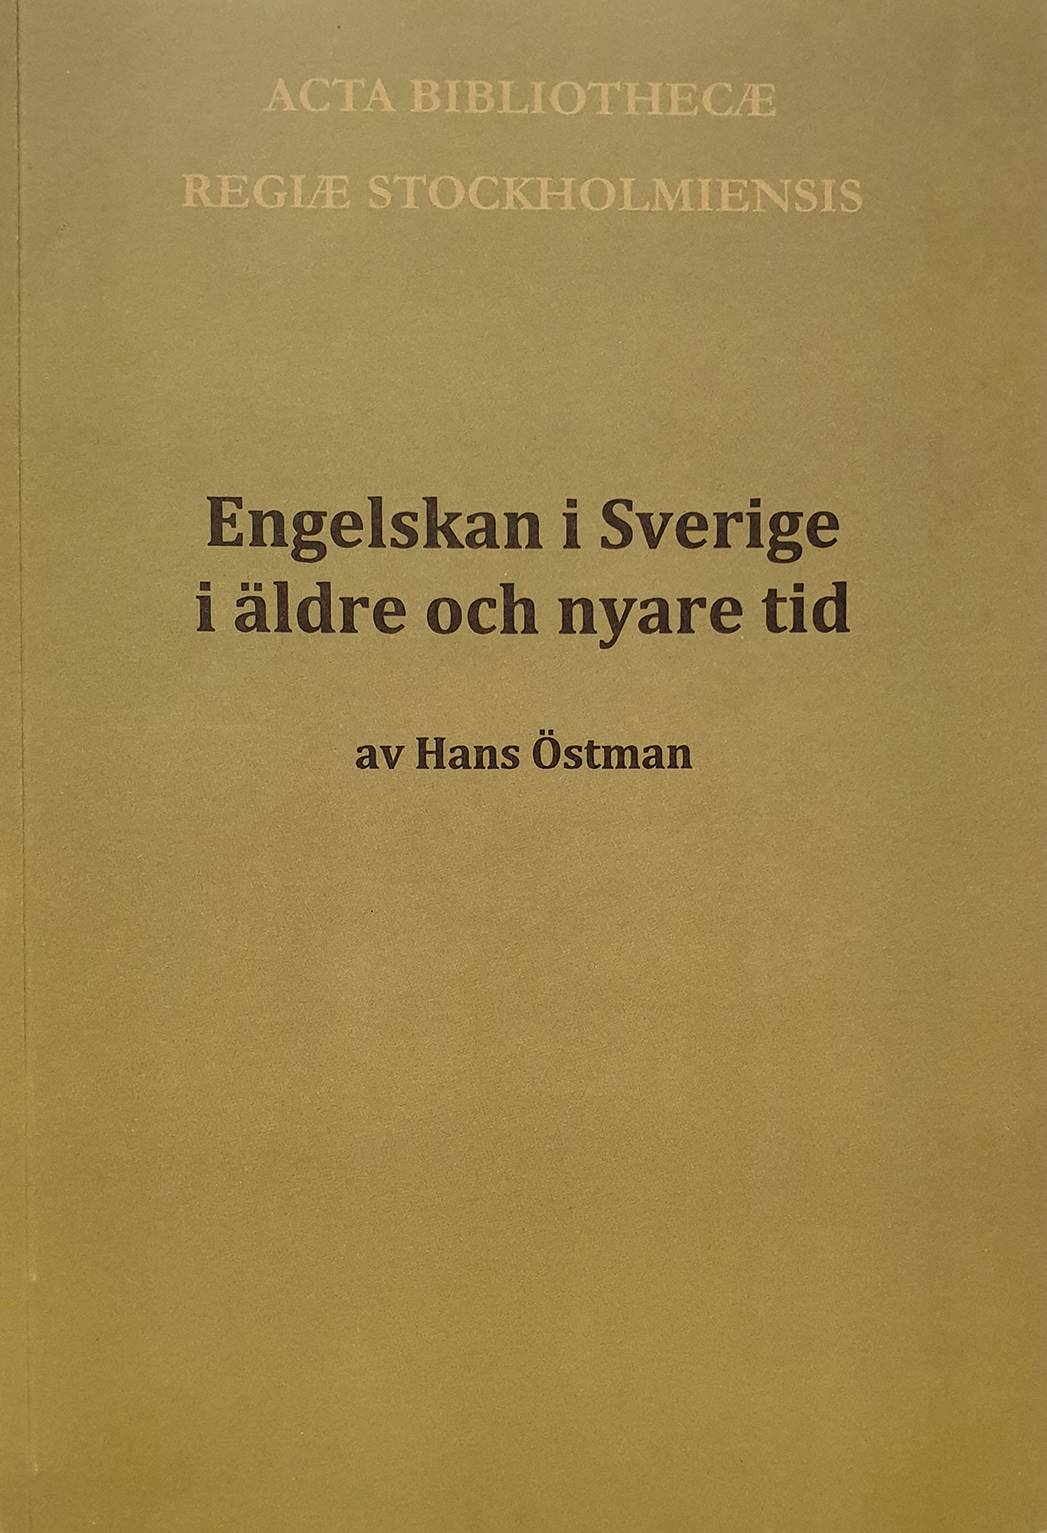 Engelskan i Sverige i äldre och nyare tid